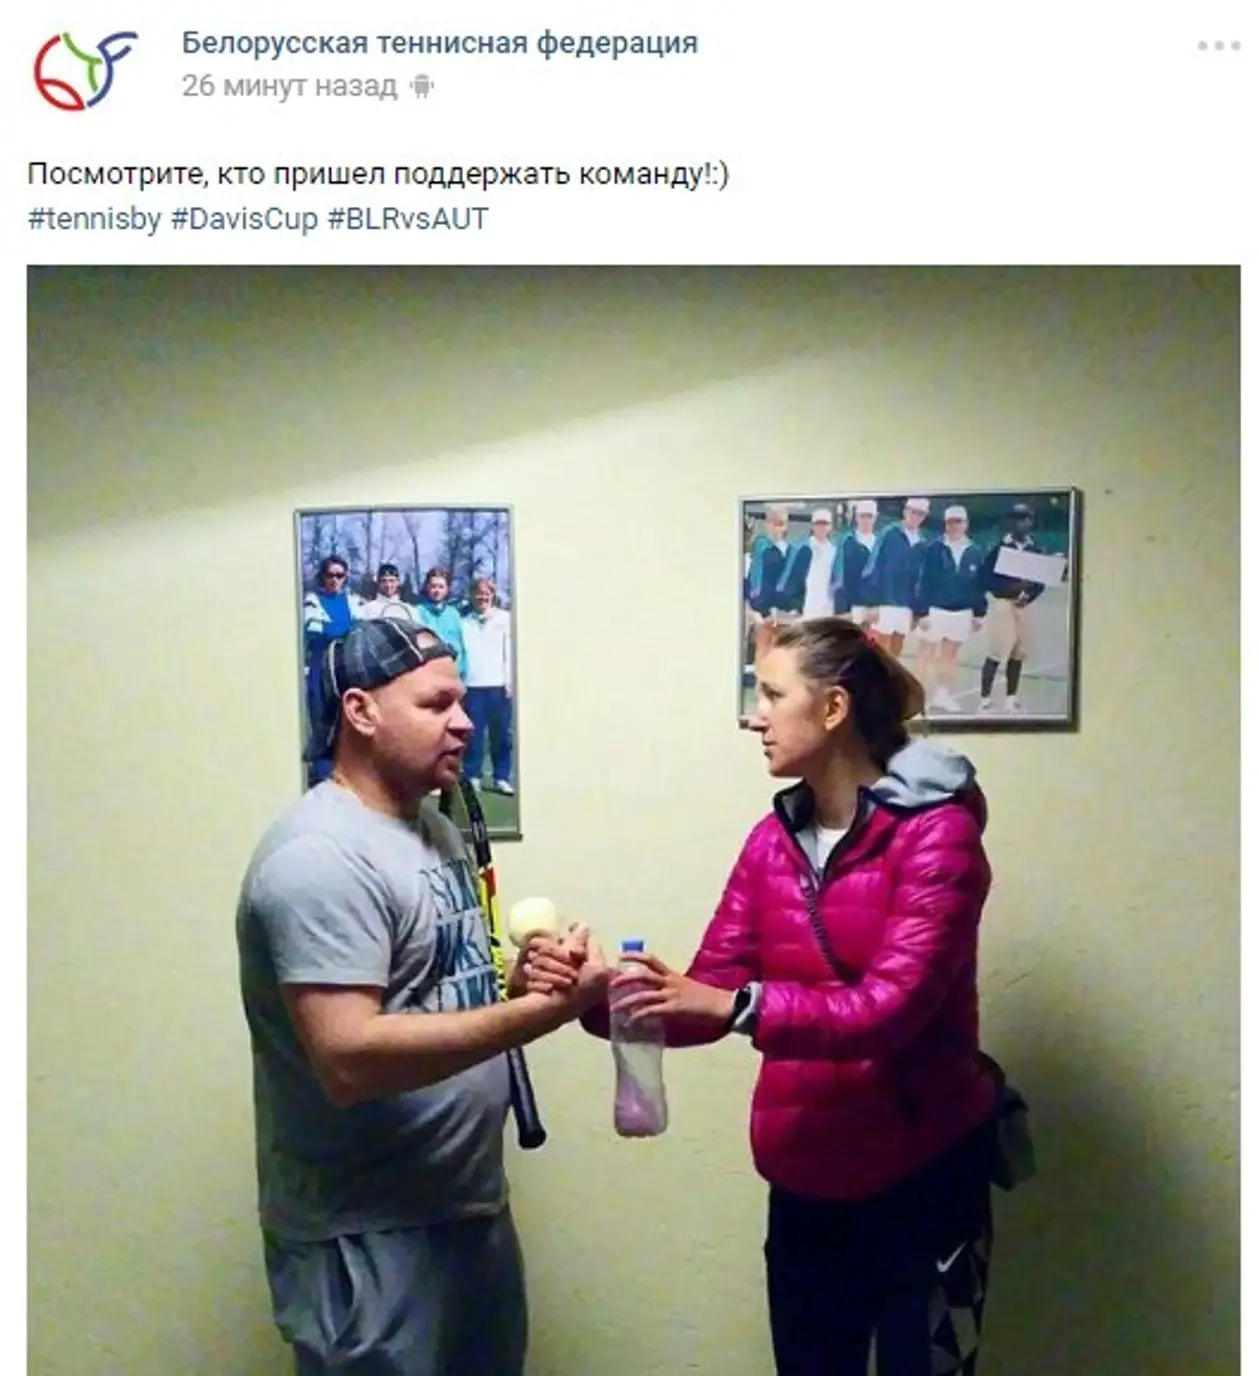 Азаренко пришла на решающий матч мужской теннисной сборной